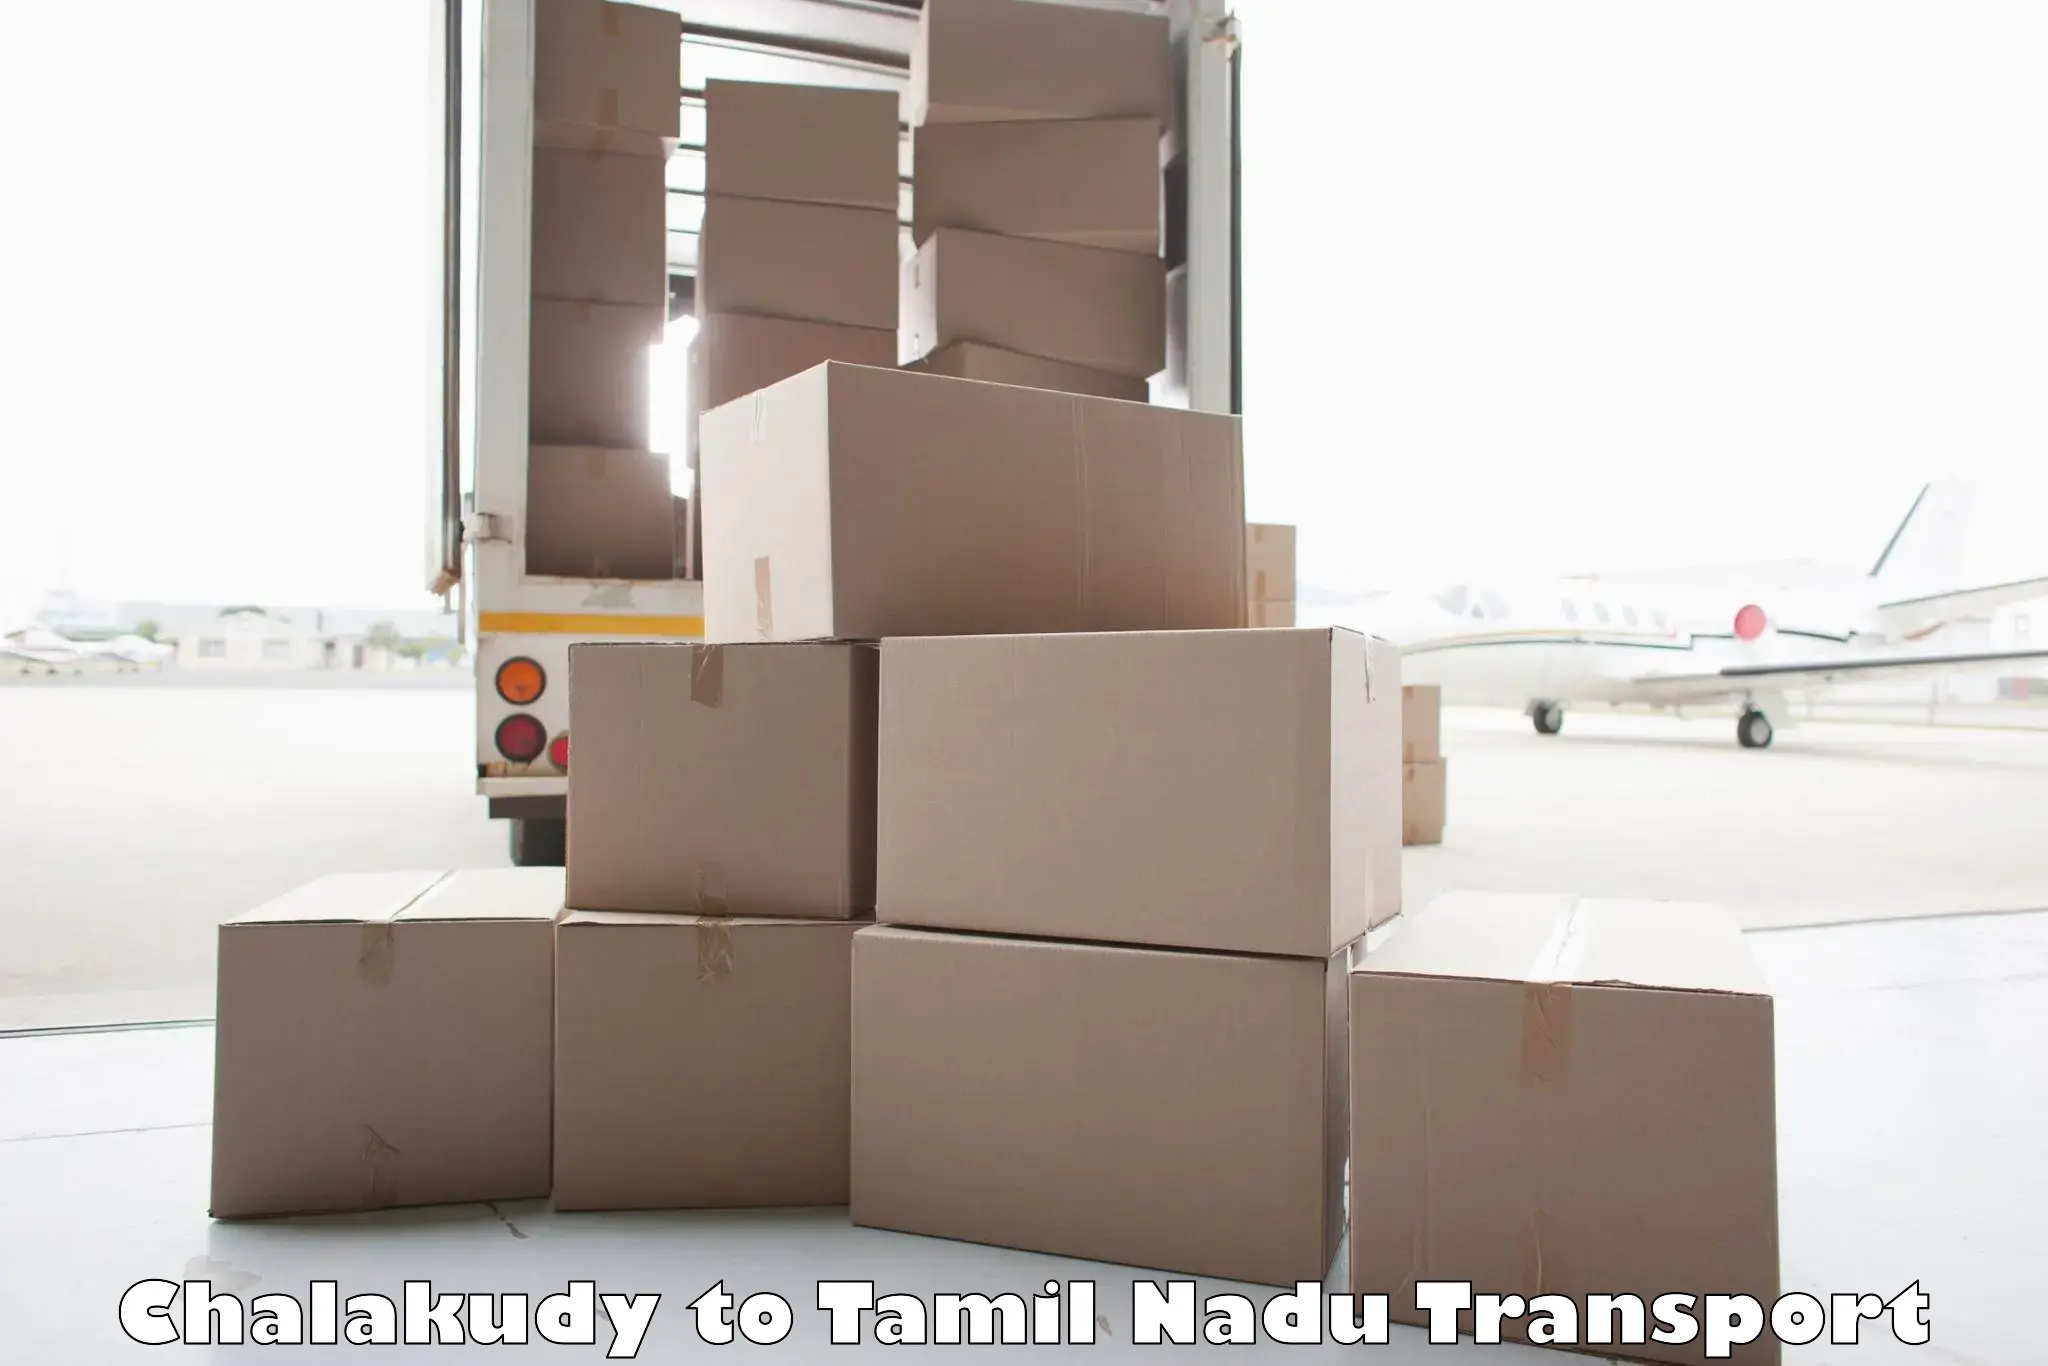 Cargo transport services Chalakudy to Ponnamaravathi